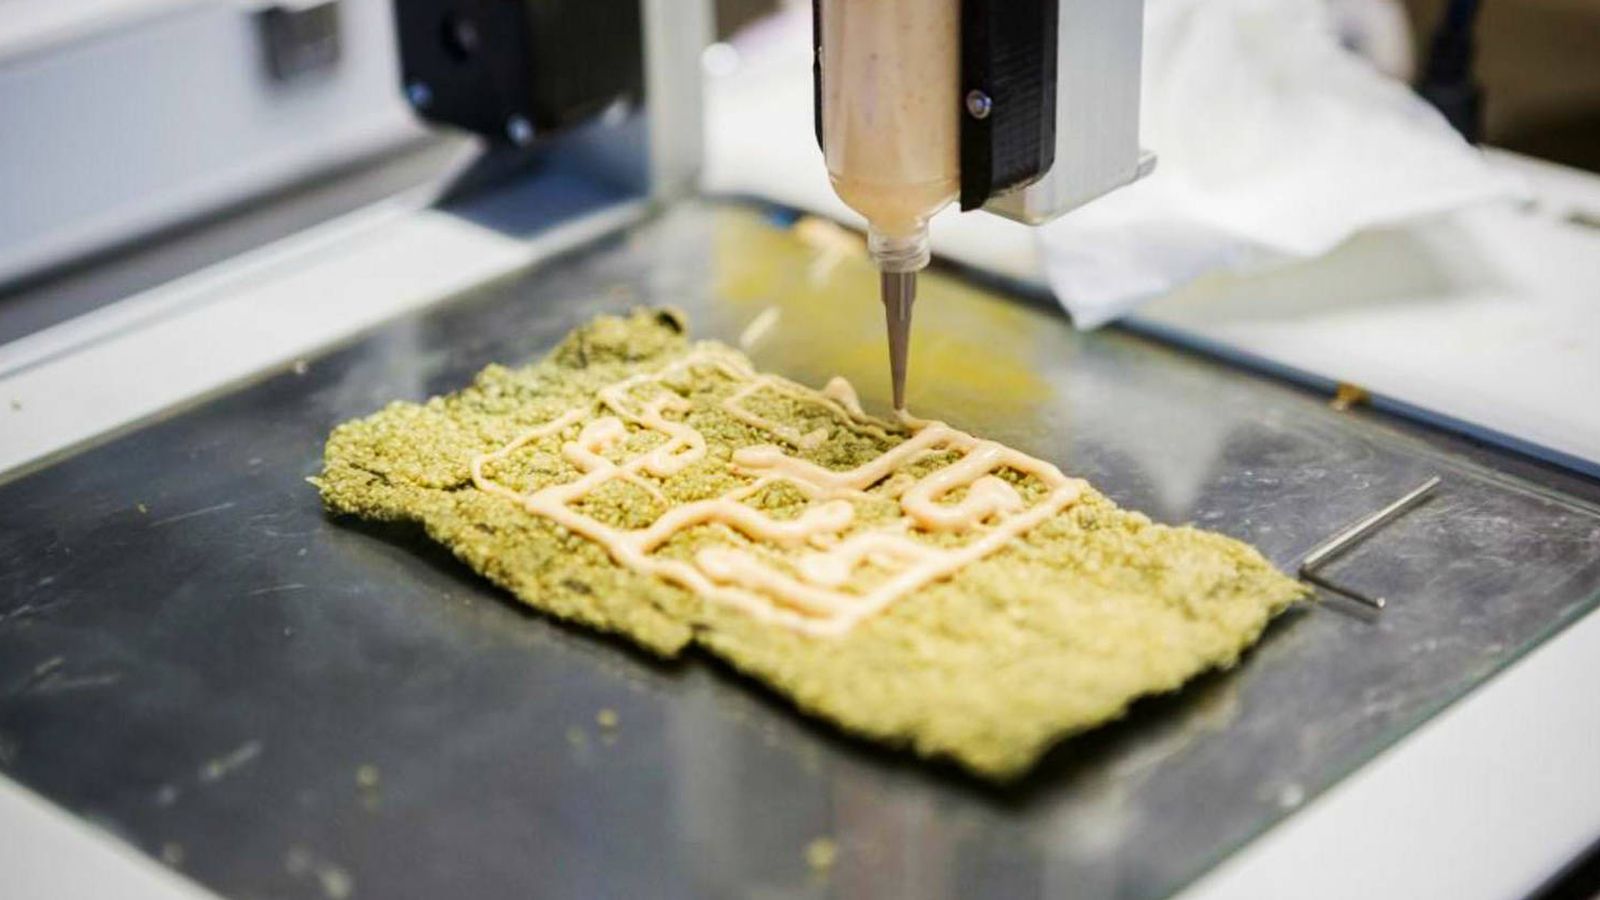 primer restaurante de comida impresa en 3D España: 180€ por falso caviar